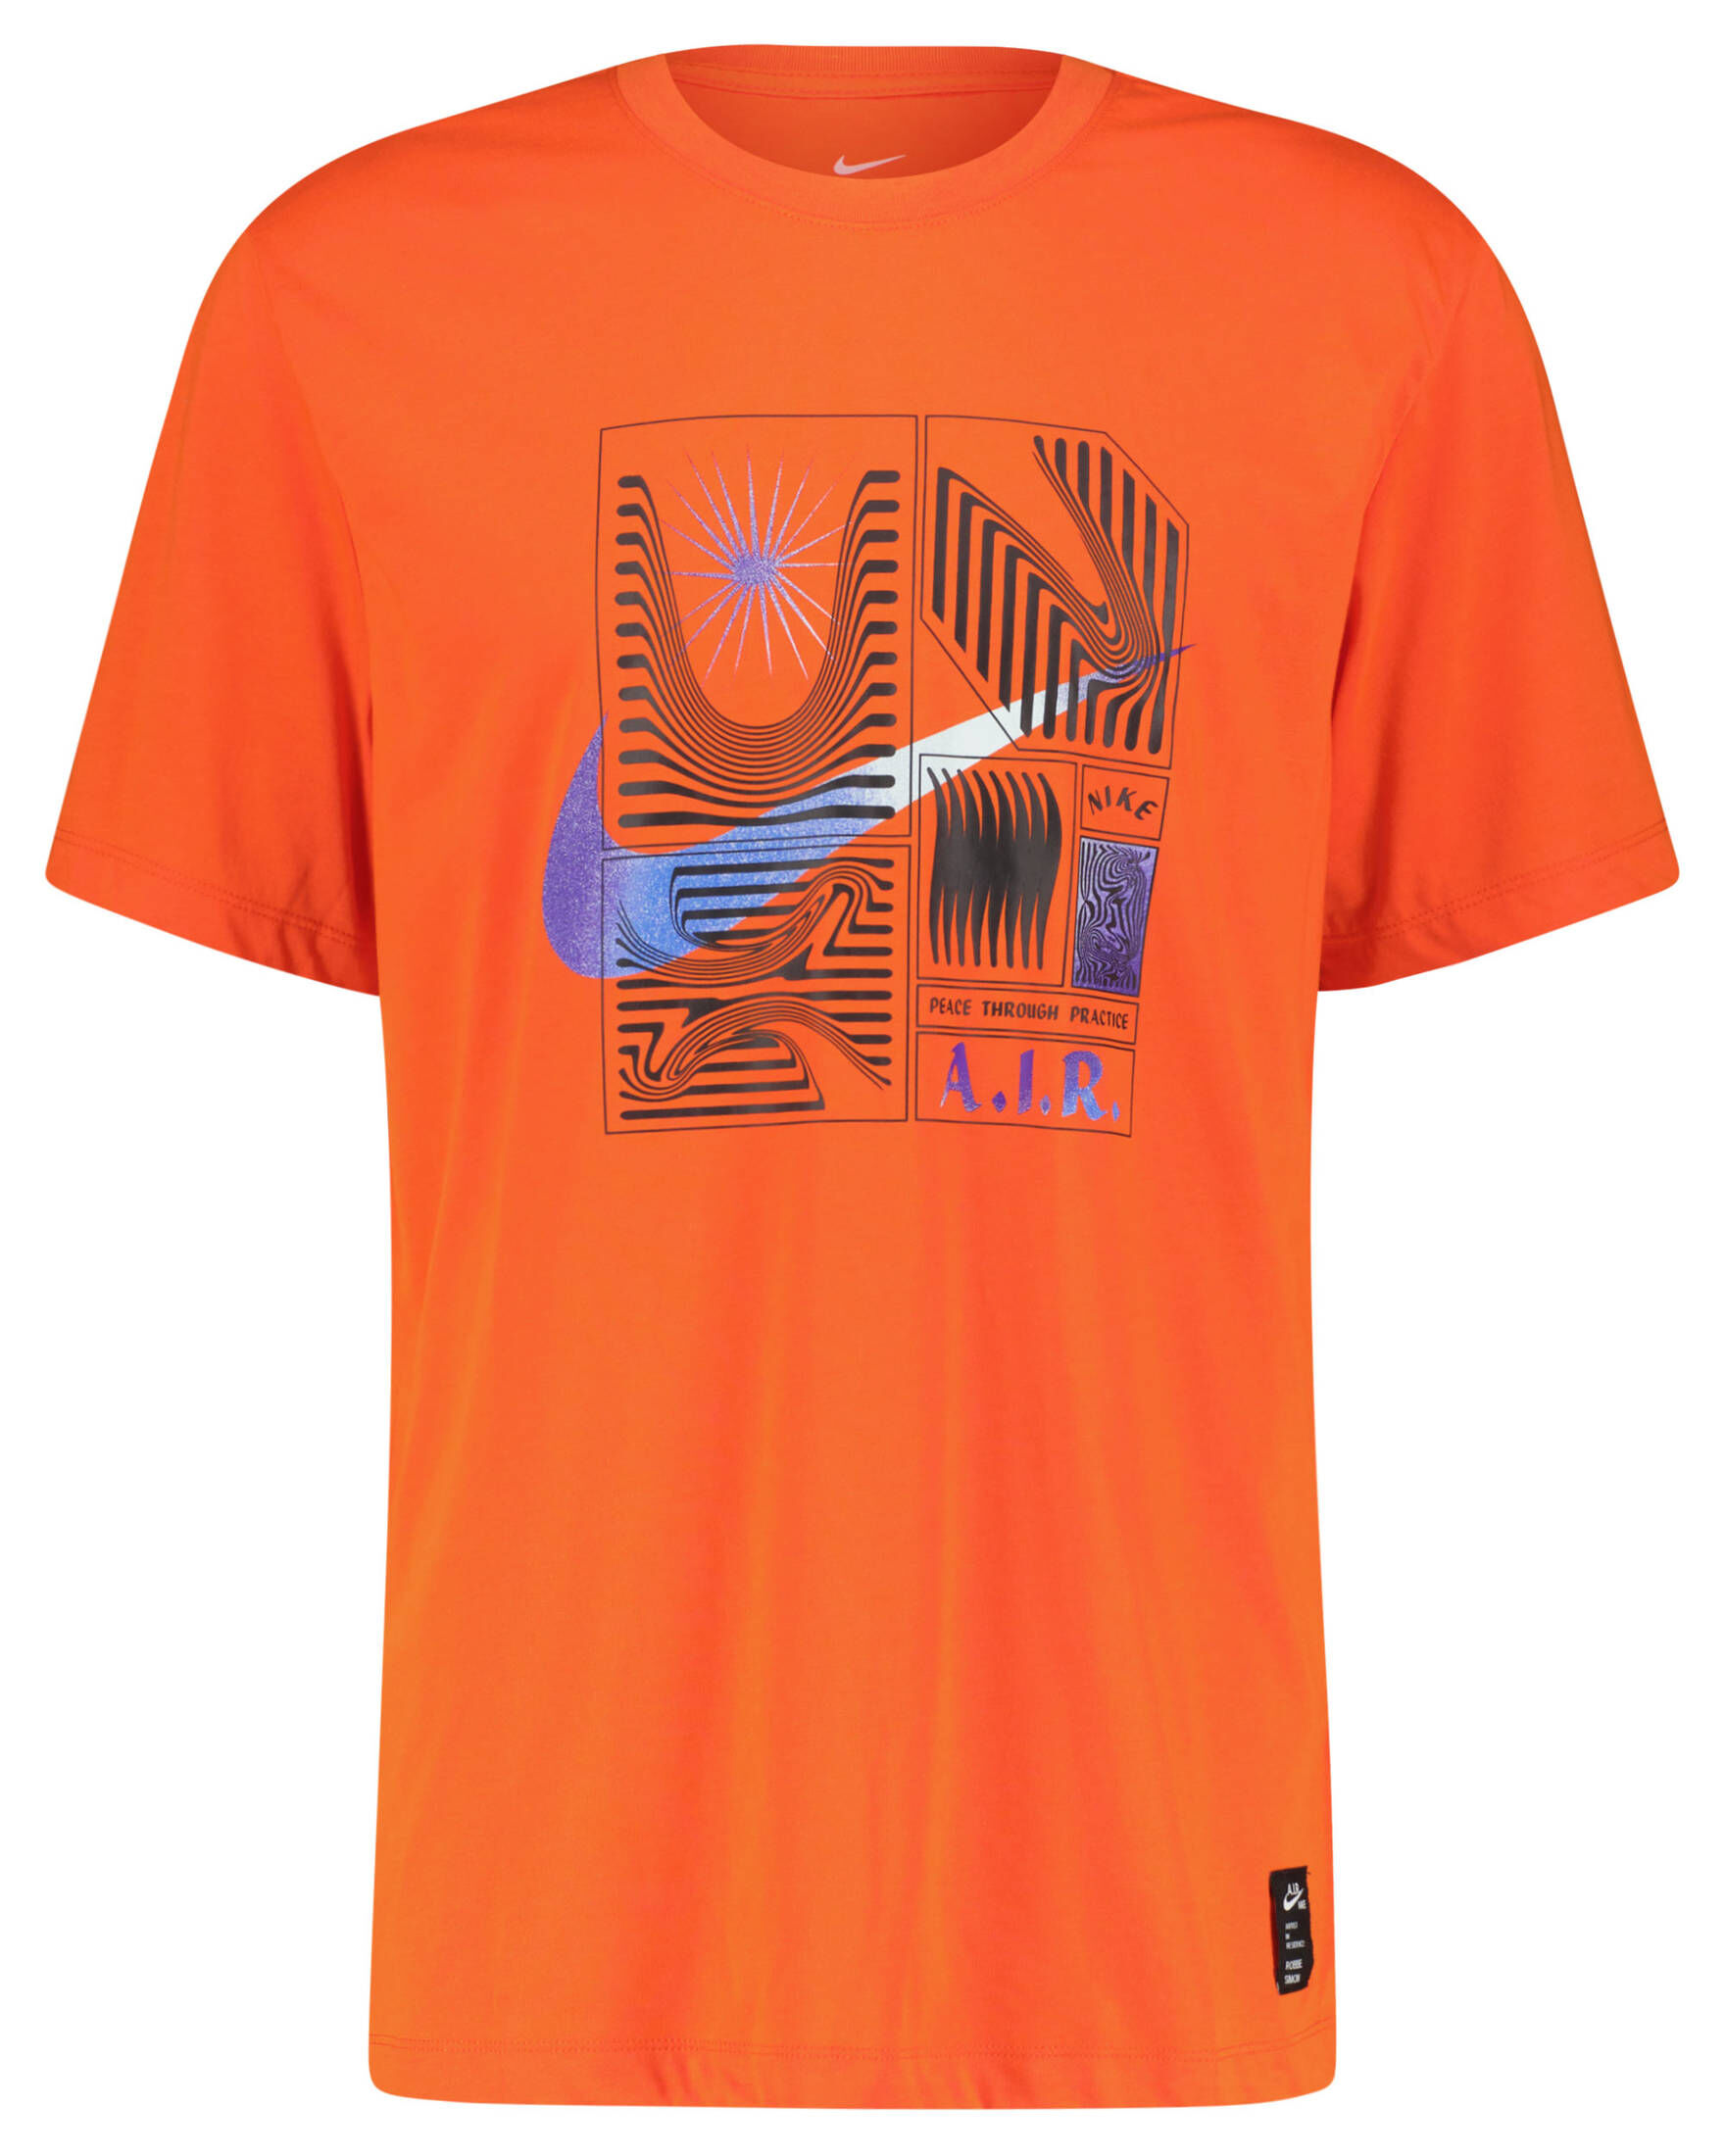 Nike Herren T-Shirt NIKE YOGA DRI-FIT A.I.R. kaufen | engelhorn